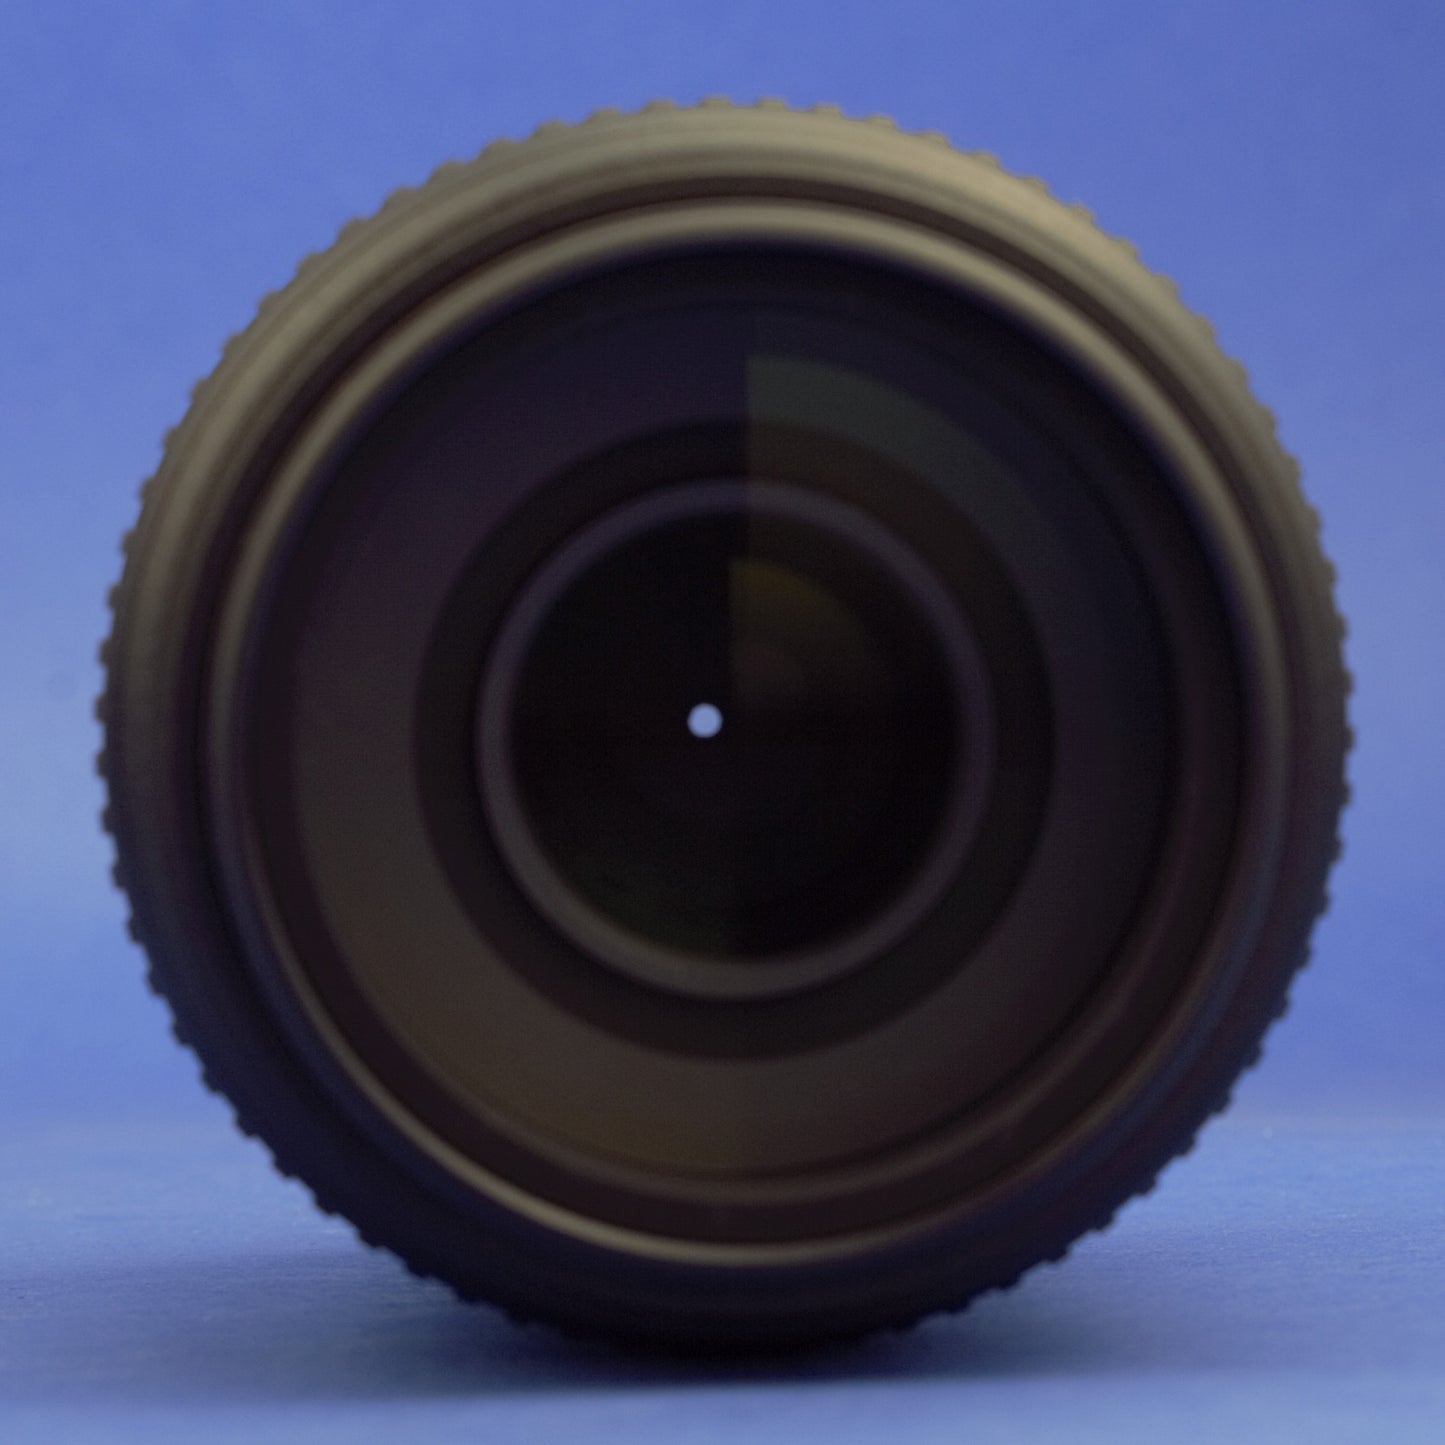 Nikon AF-S Nikkor 55-300mm 4.5-5.6 VR Lens